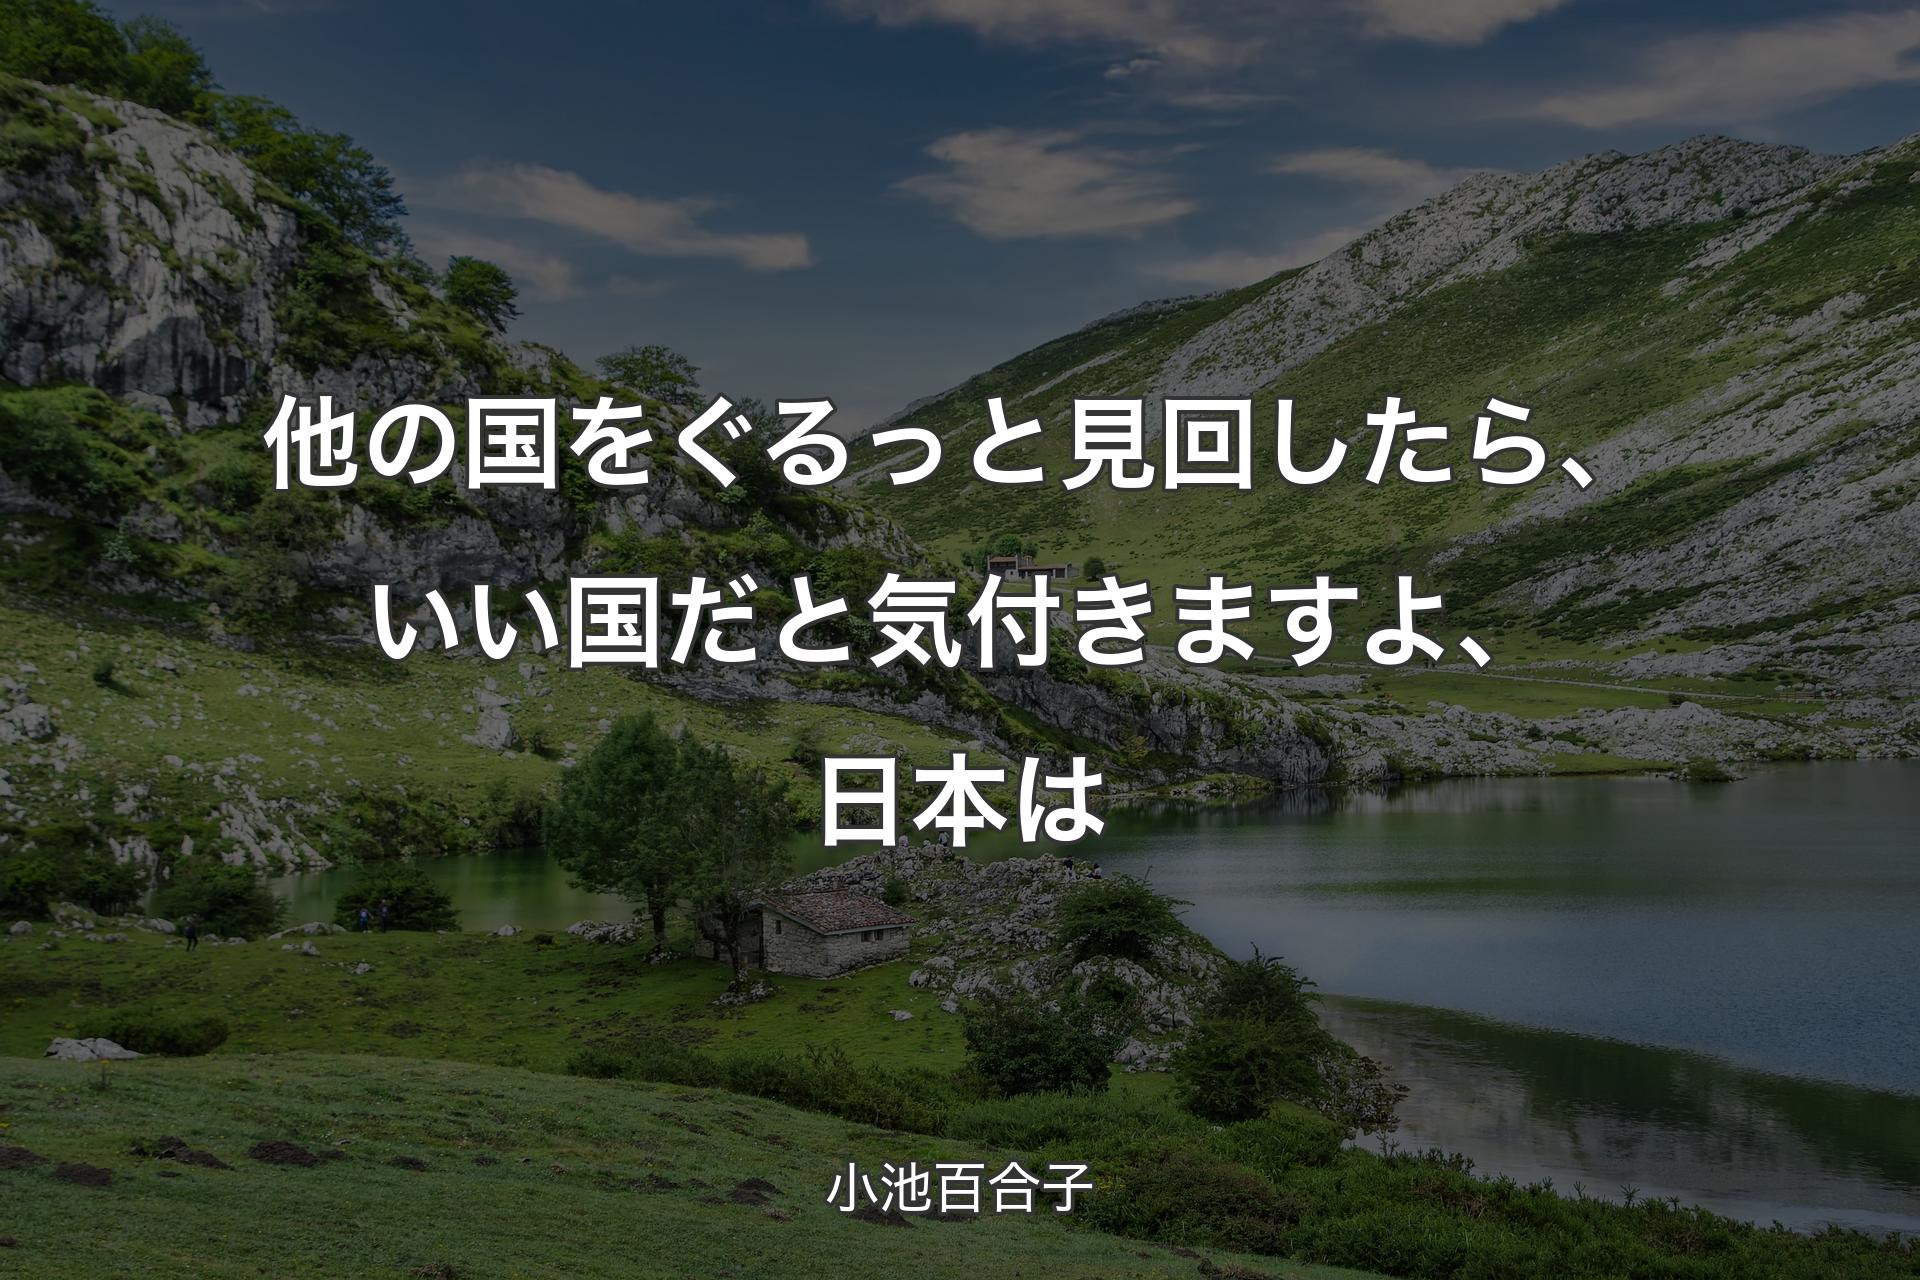 【背景1】他の国をぐるっと見回したら、いい国だと気付きますよ、日本は - 小池百合子